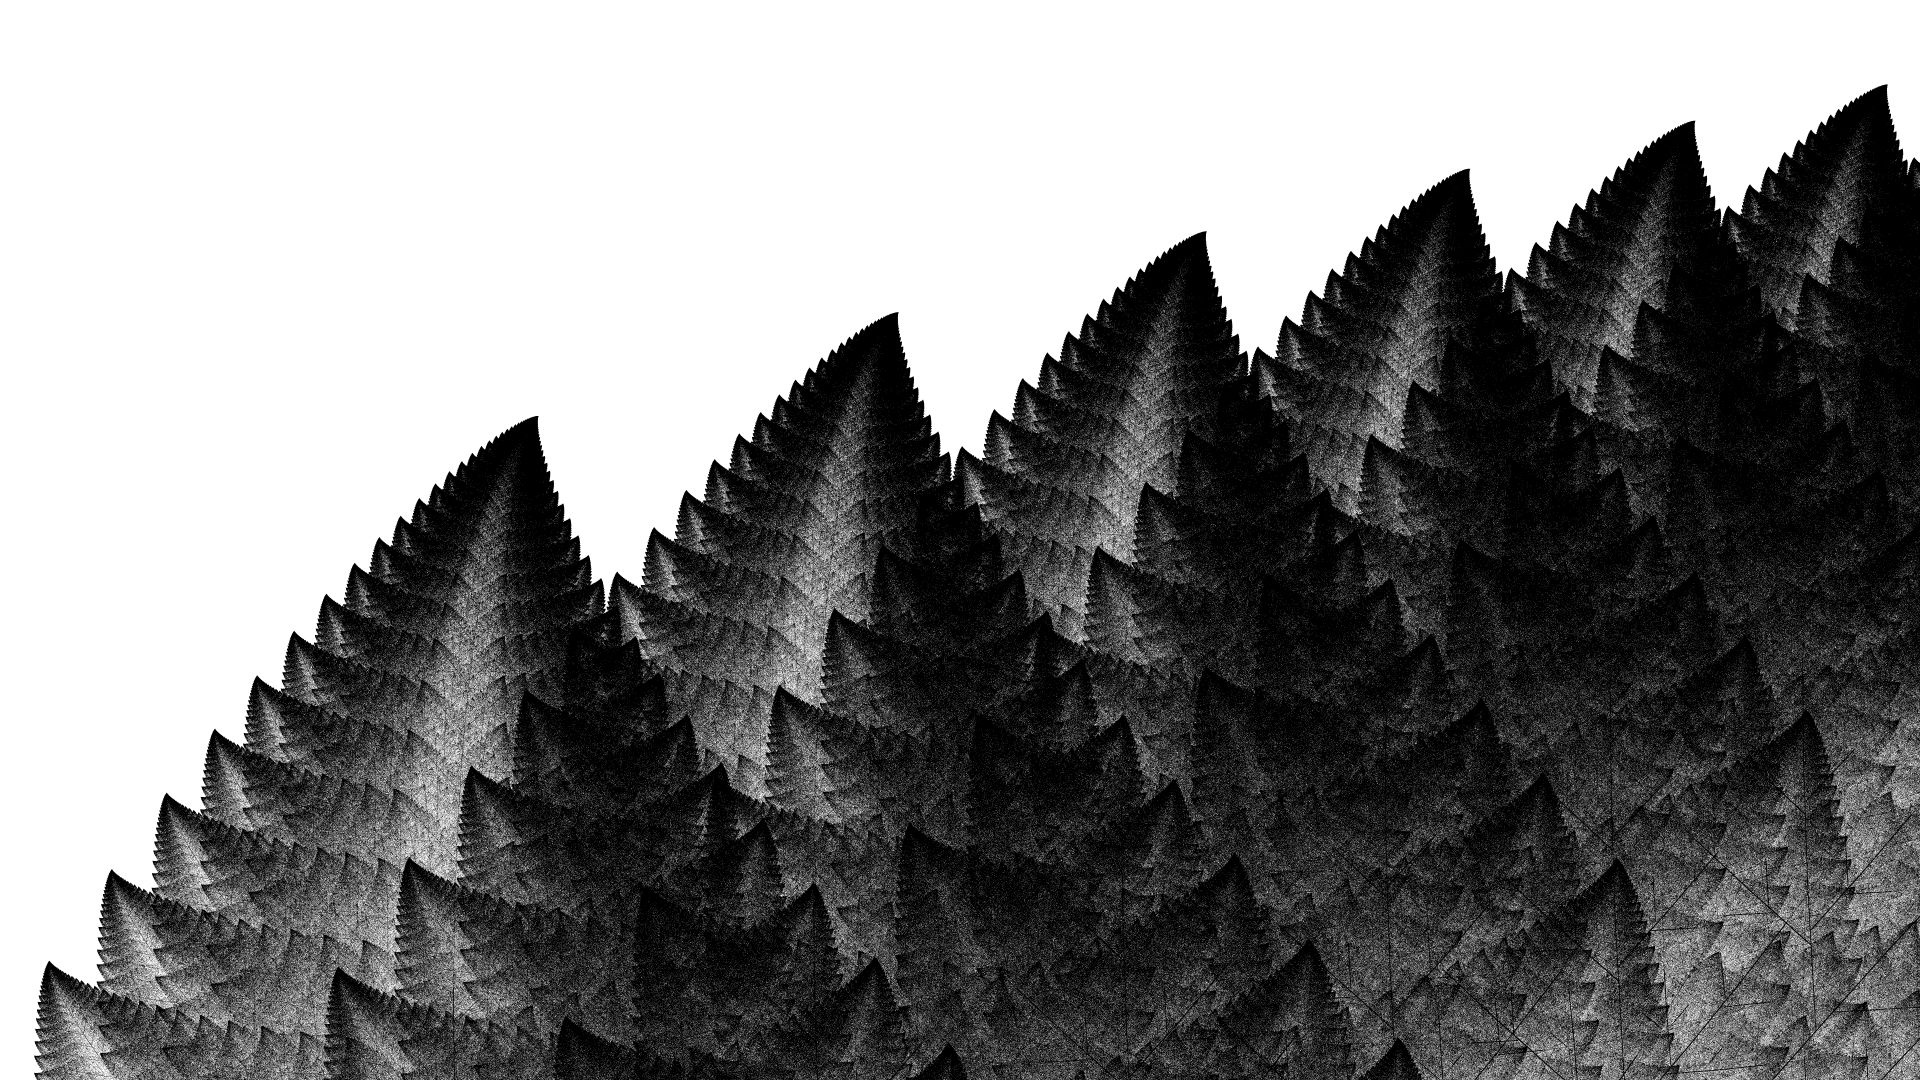 Detail from leaf fractal based on Barnsley Fern